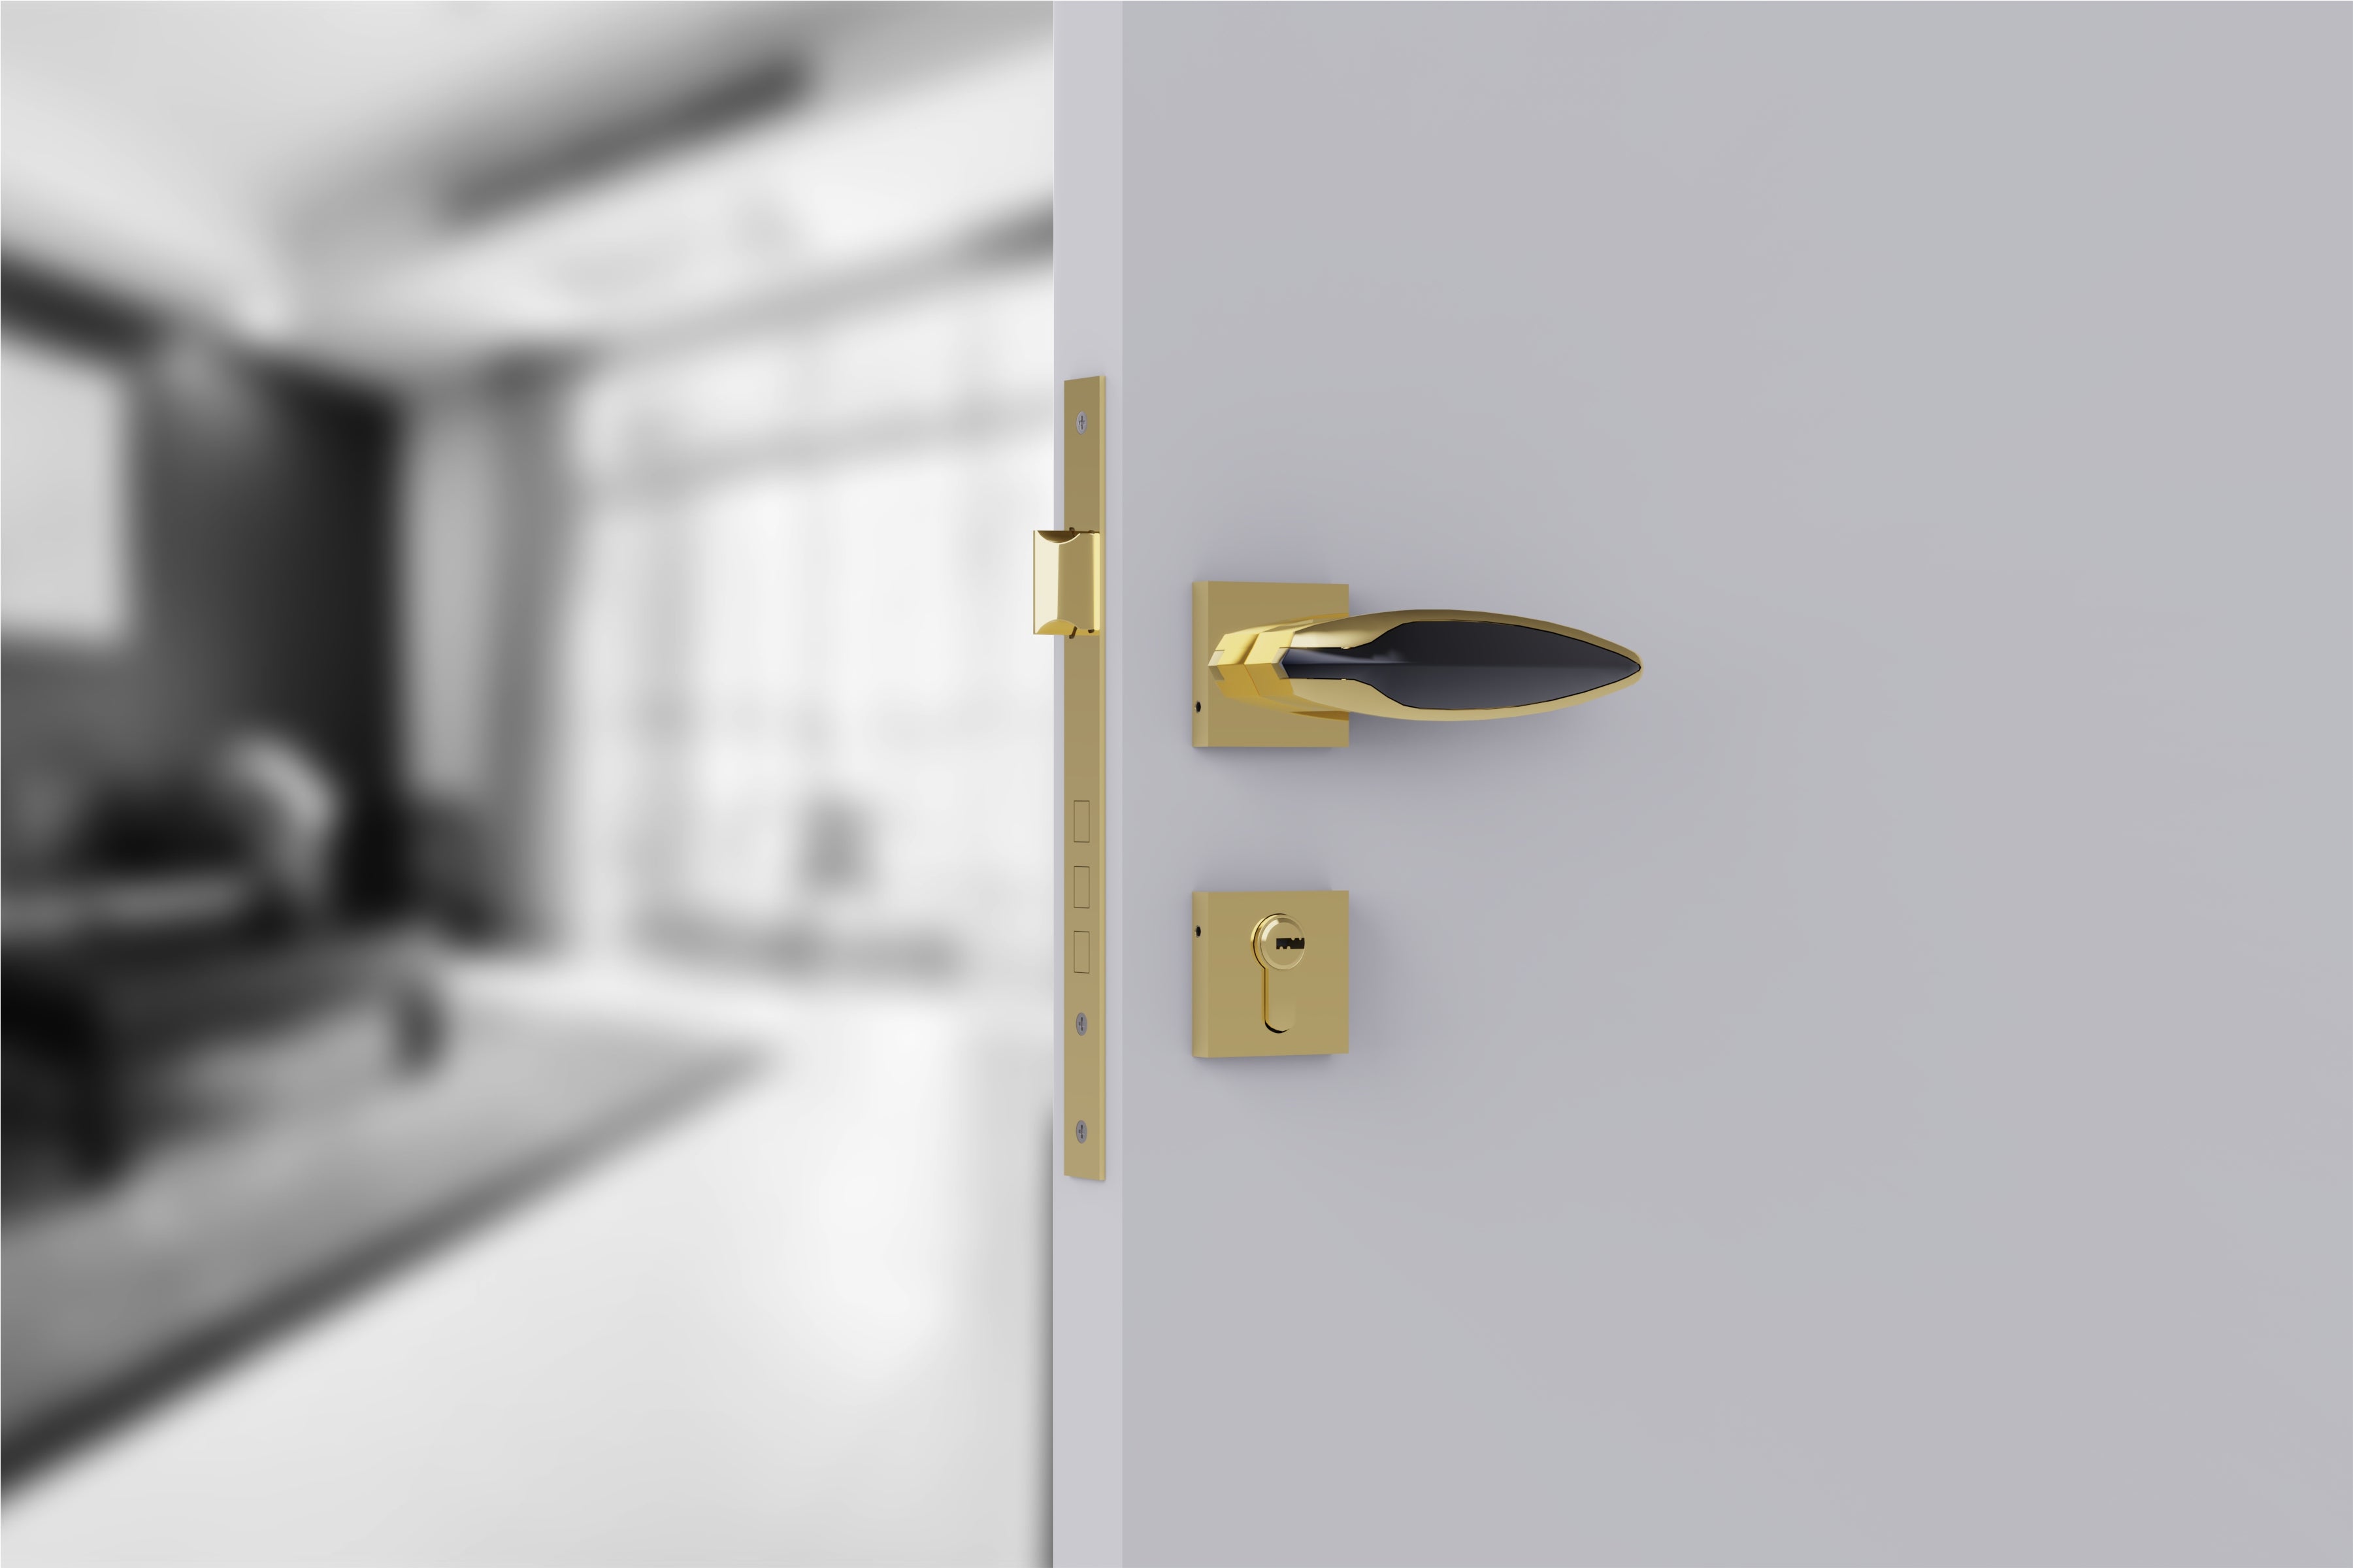 Heavy Duty Mortise Door Lock with Door Handle Lock Set for Bedroom Bathroom -by GLOXY®